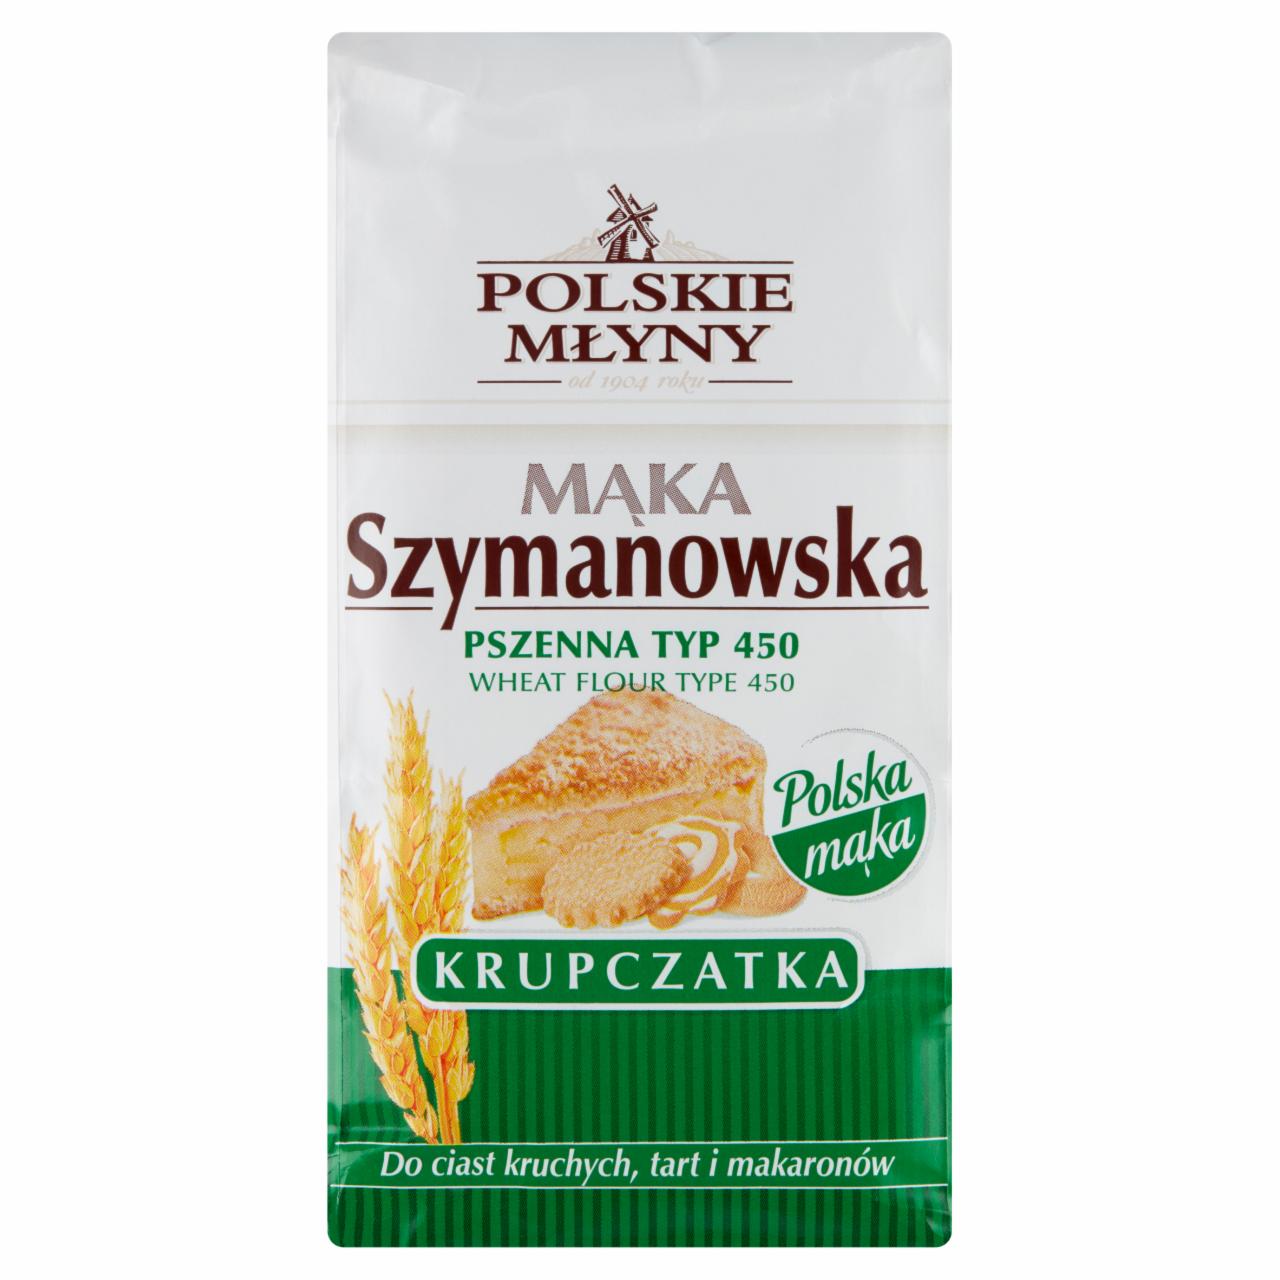 Zdjęcia - Polskie Młyny Mąka Szymanowska Krupczatka pszenna typ 450 1 kg